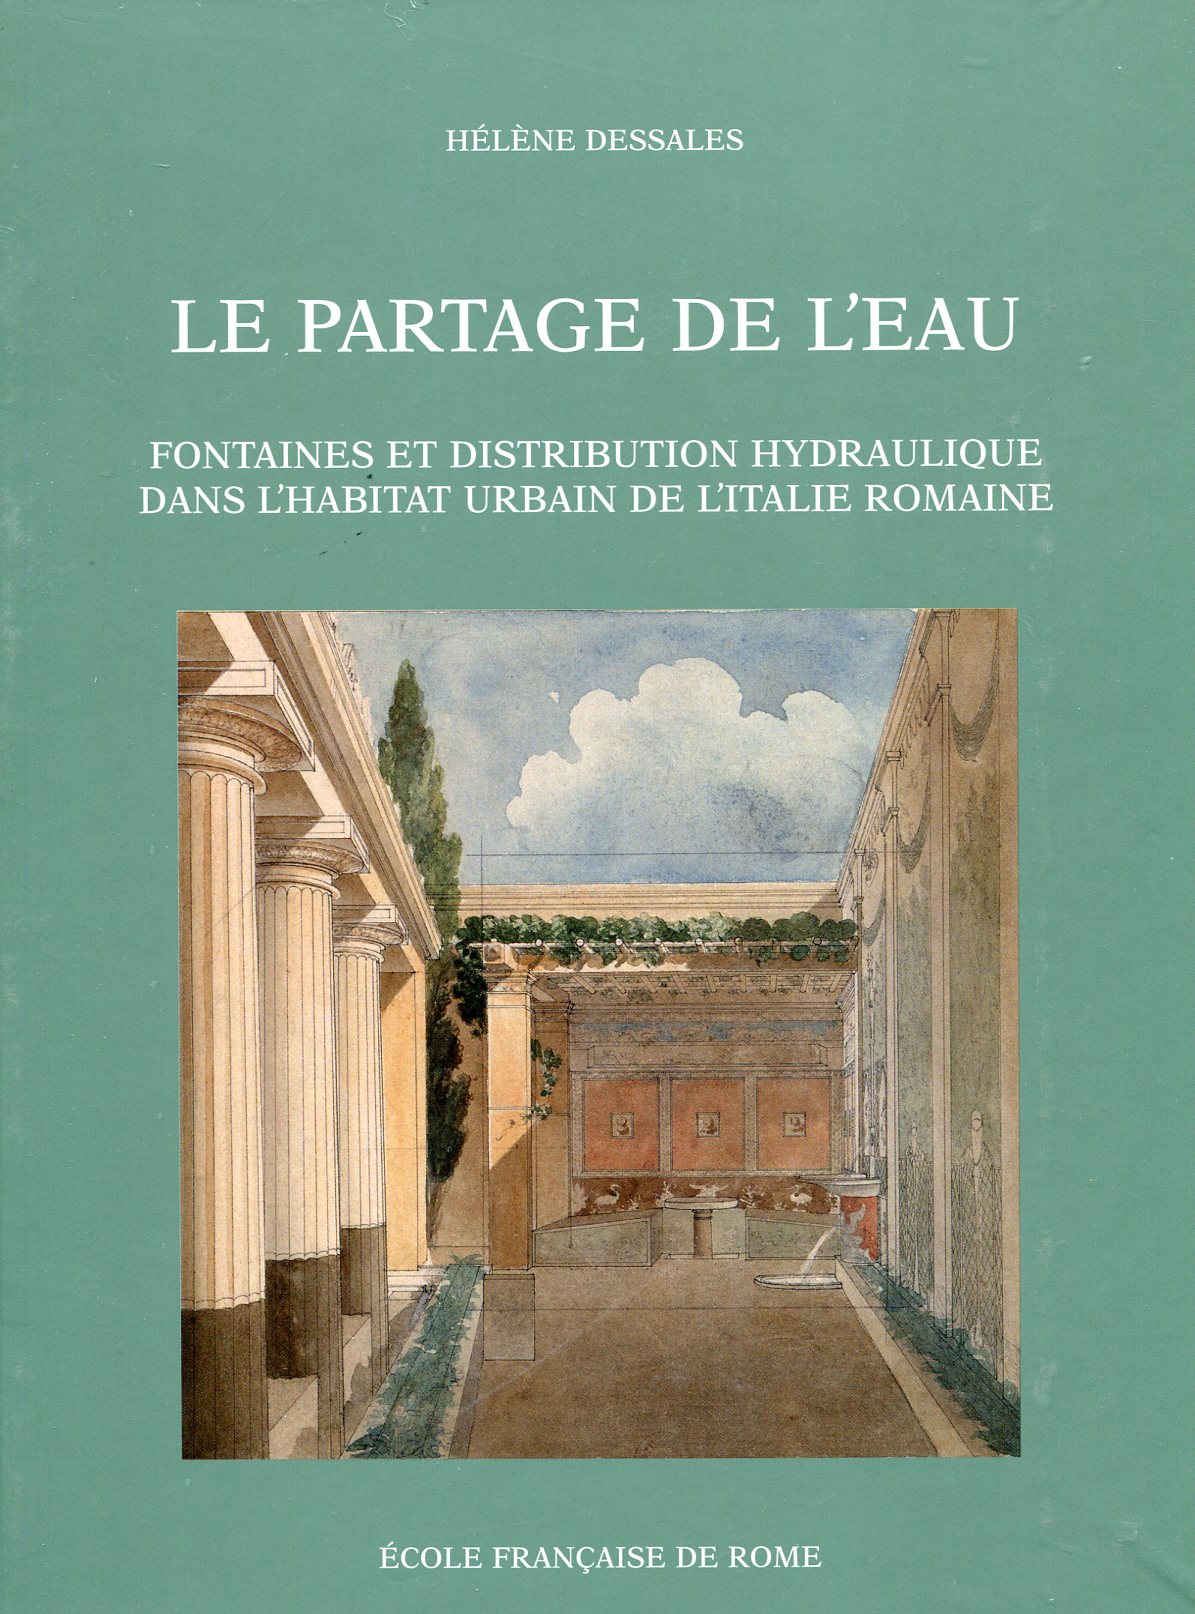 ÉPUISÉ - Le partage de l'eau. Fontaines et distribution hydraulique dans l'habitat urbain de l'Italie romaine, 2013, 602 p.